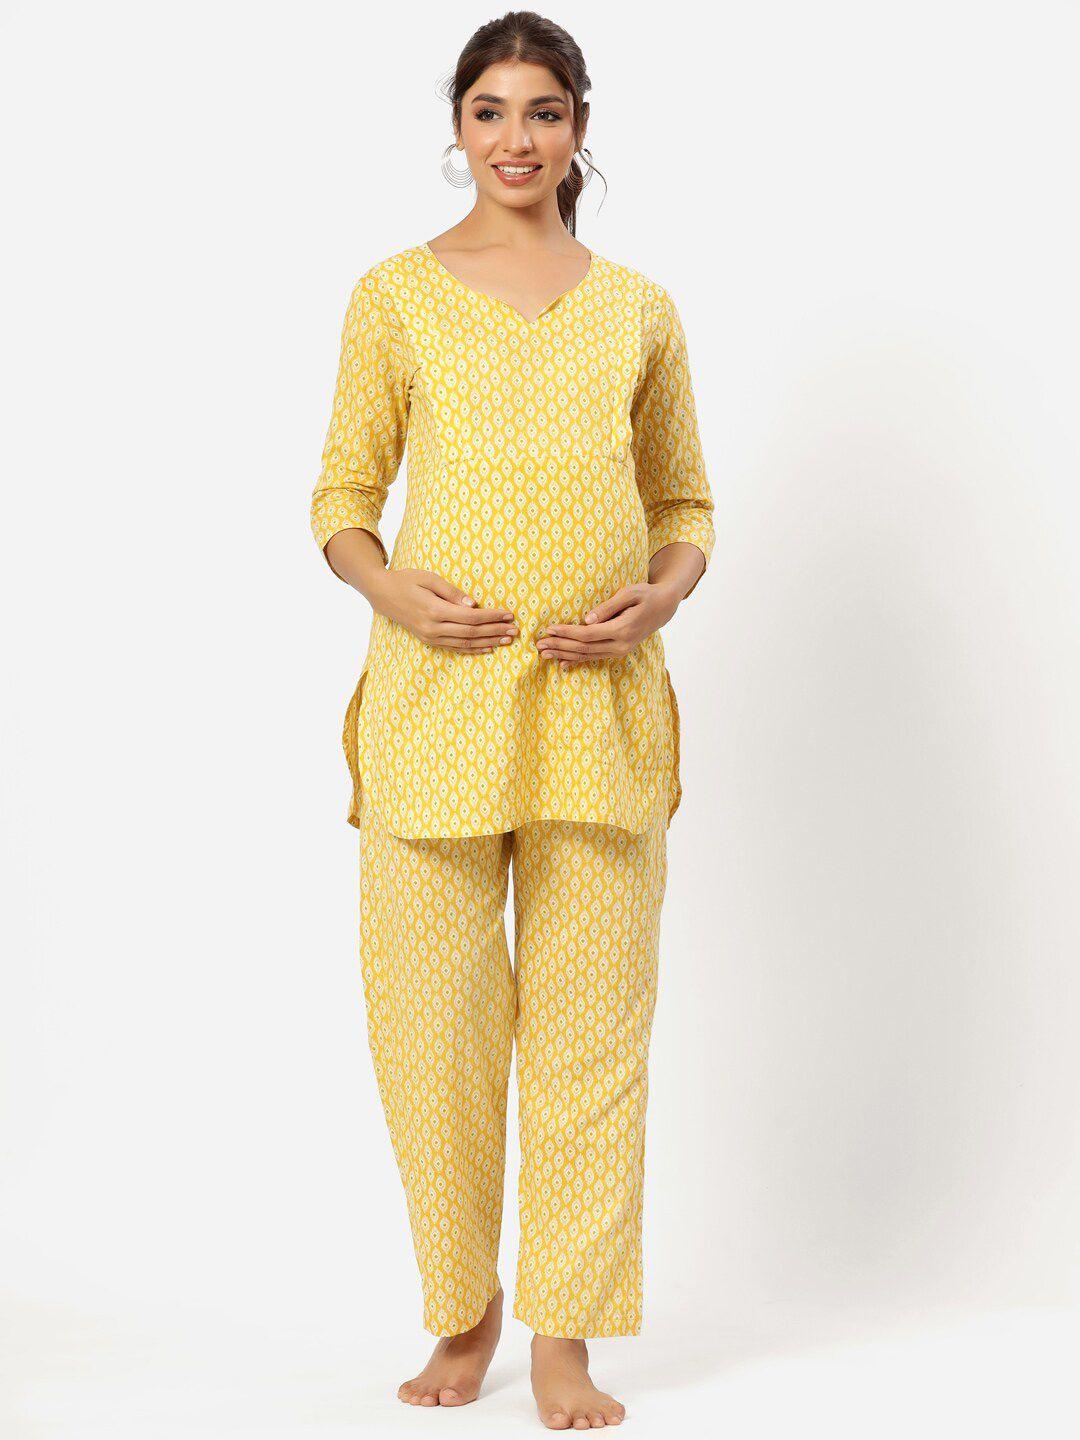 crafiqa geometric printed pure cotton maternity nightdress